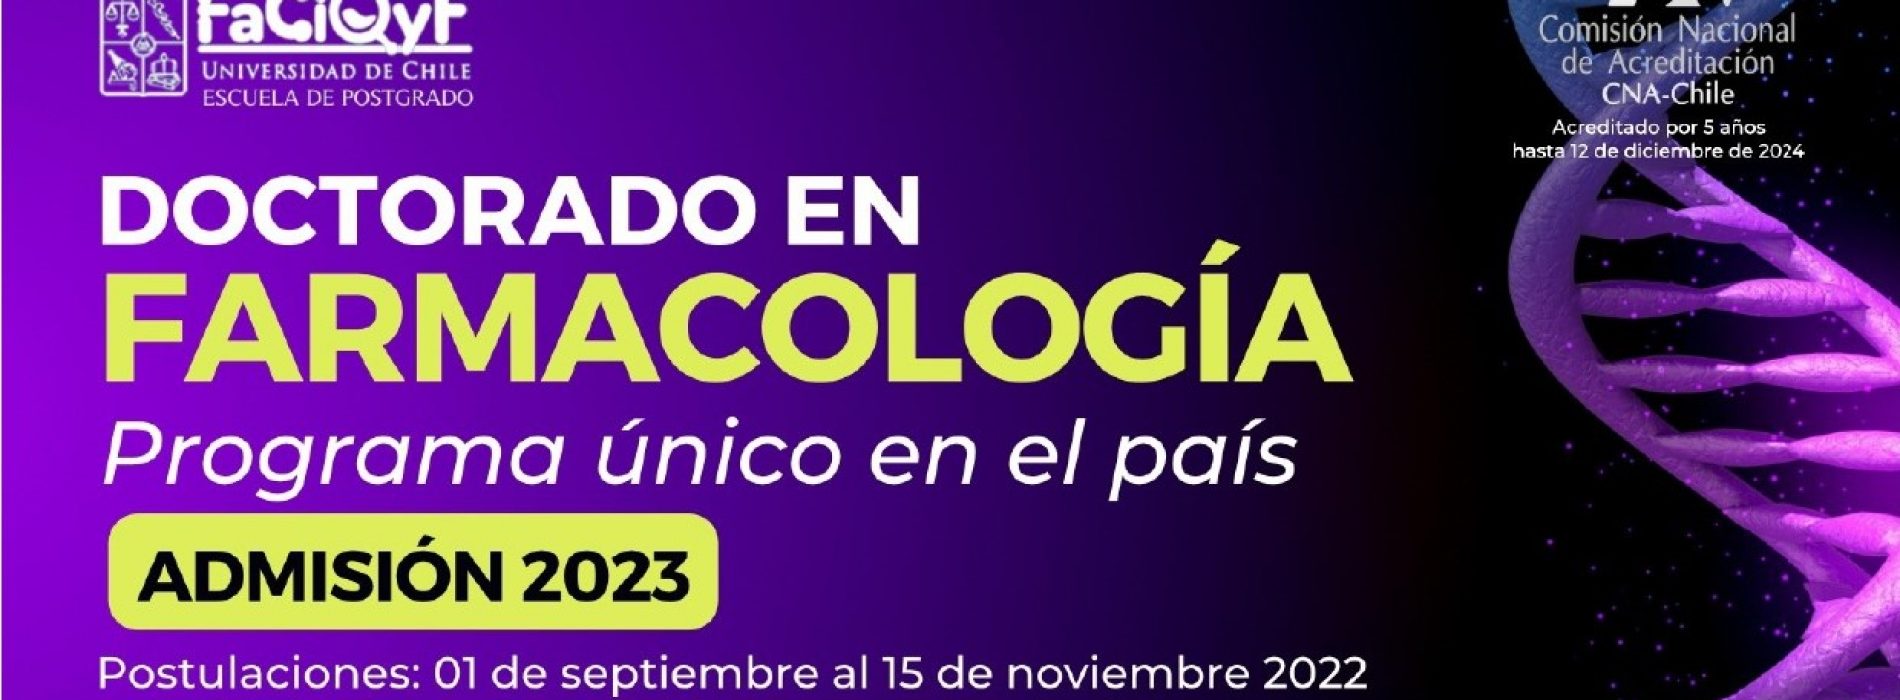 Doctorado en Farmacología, Universidad de Chile 2023